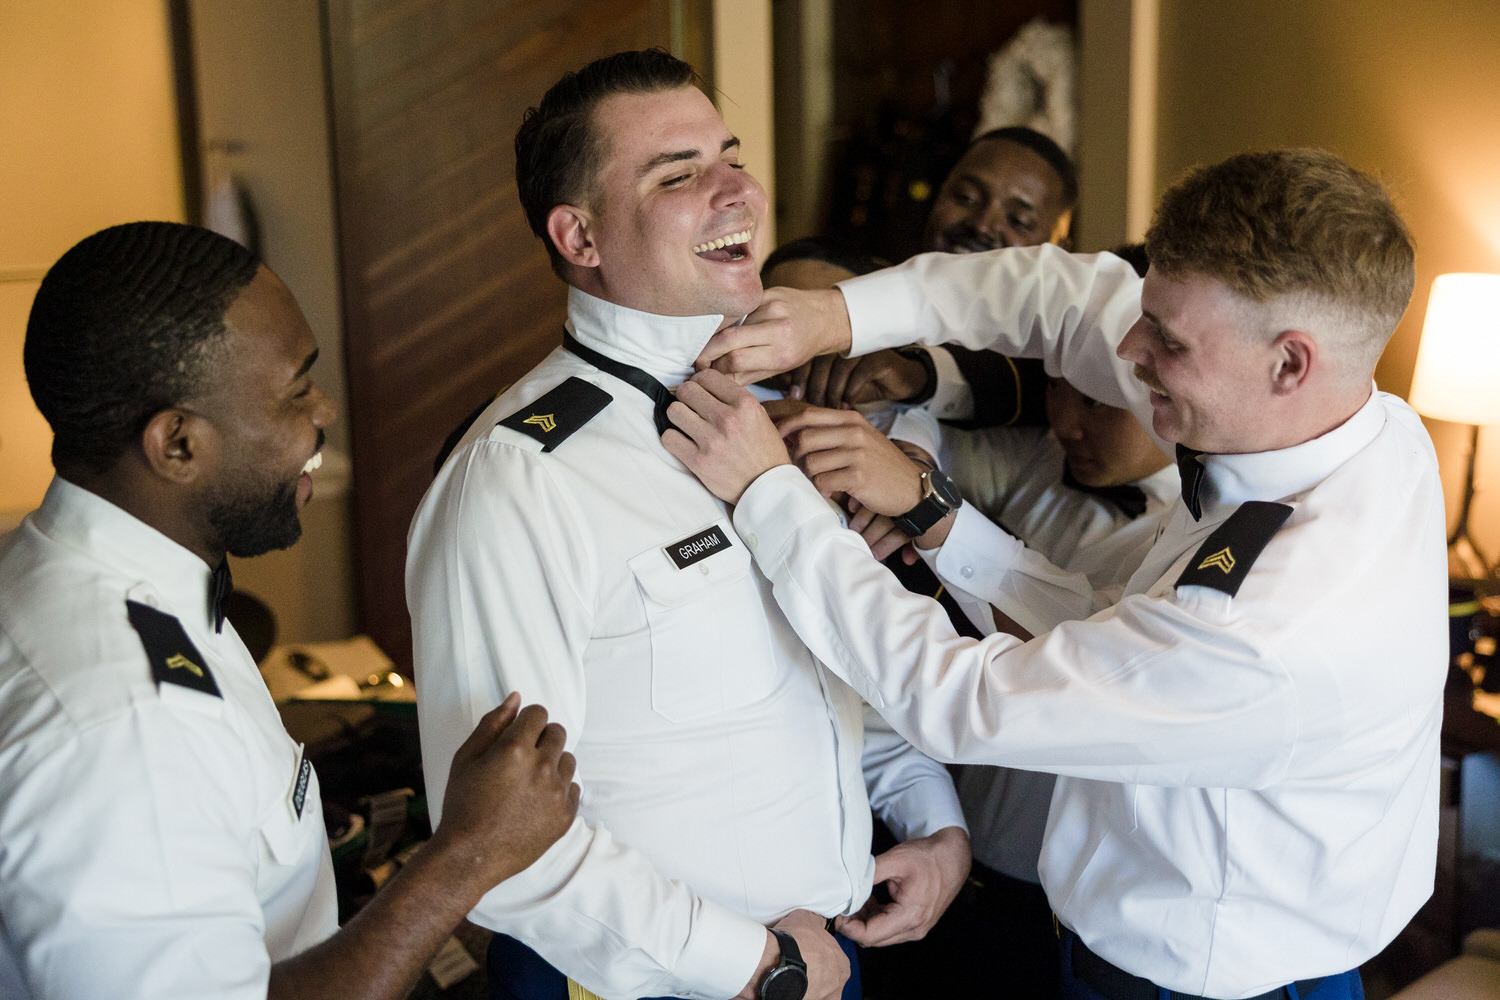 Groomsmen in air force dress blues help the groom get dressed.